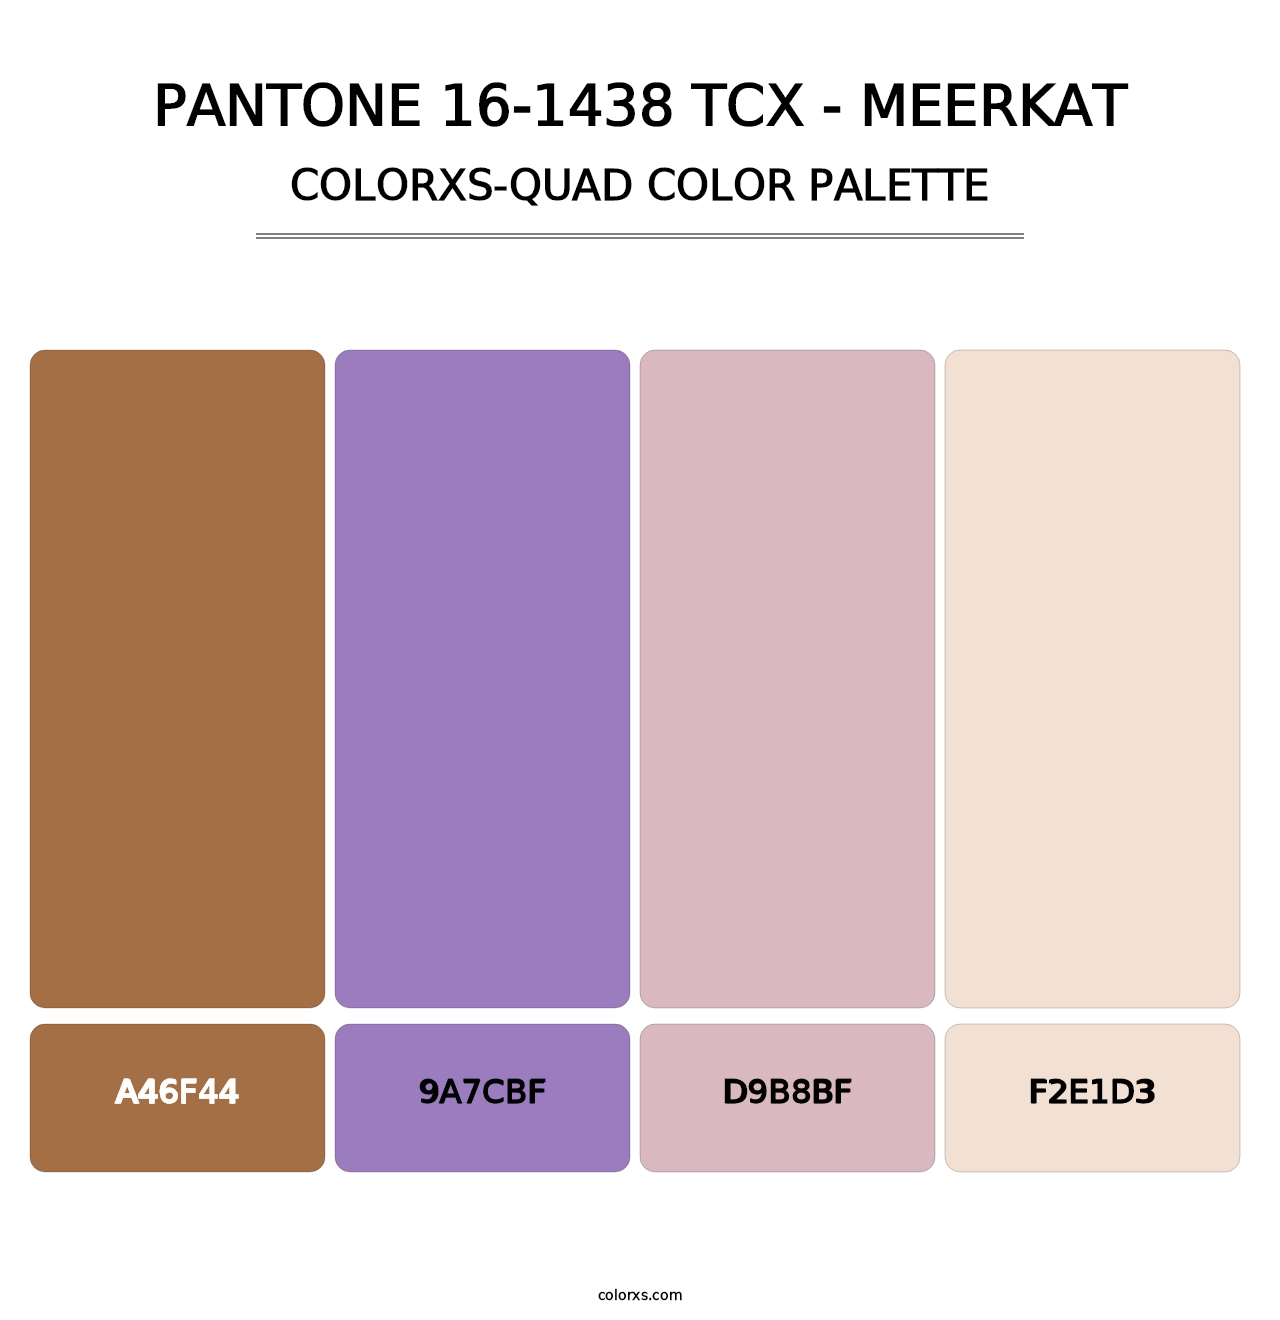 PANTONE 16-1438 TCX - Meerkat - Colorxs Quad Palette